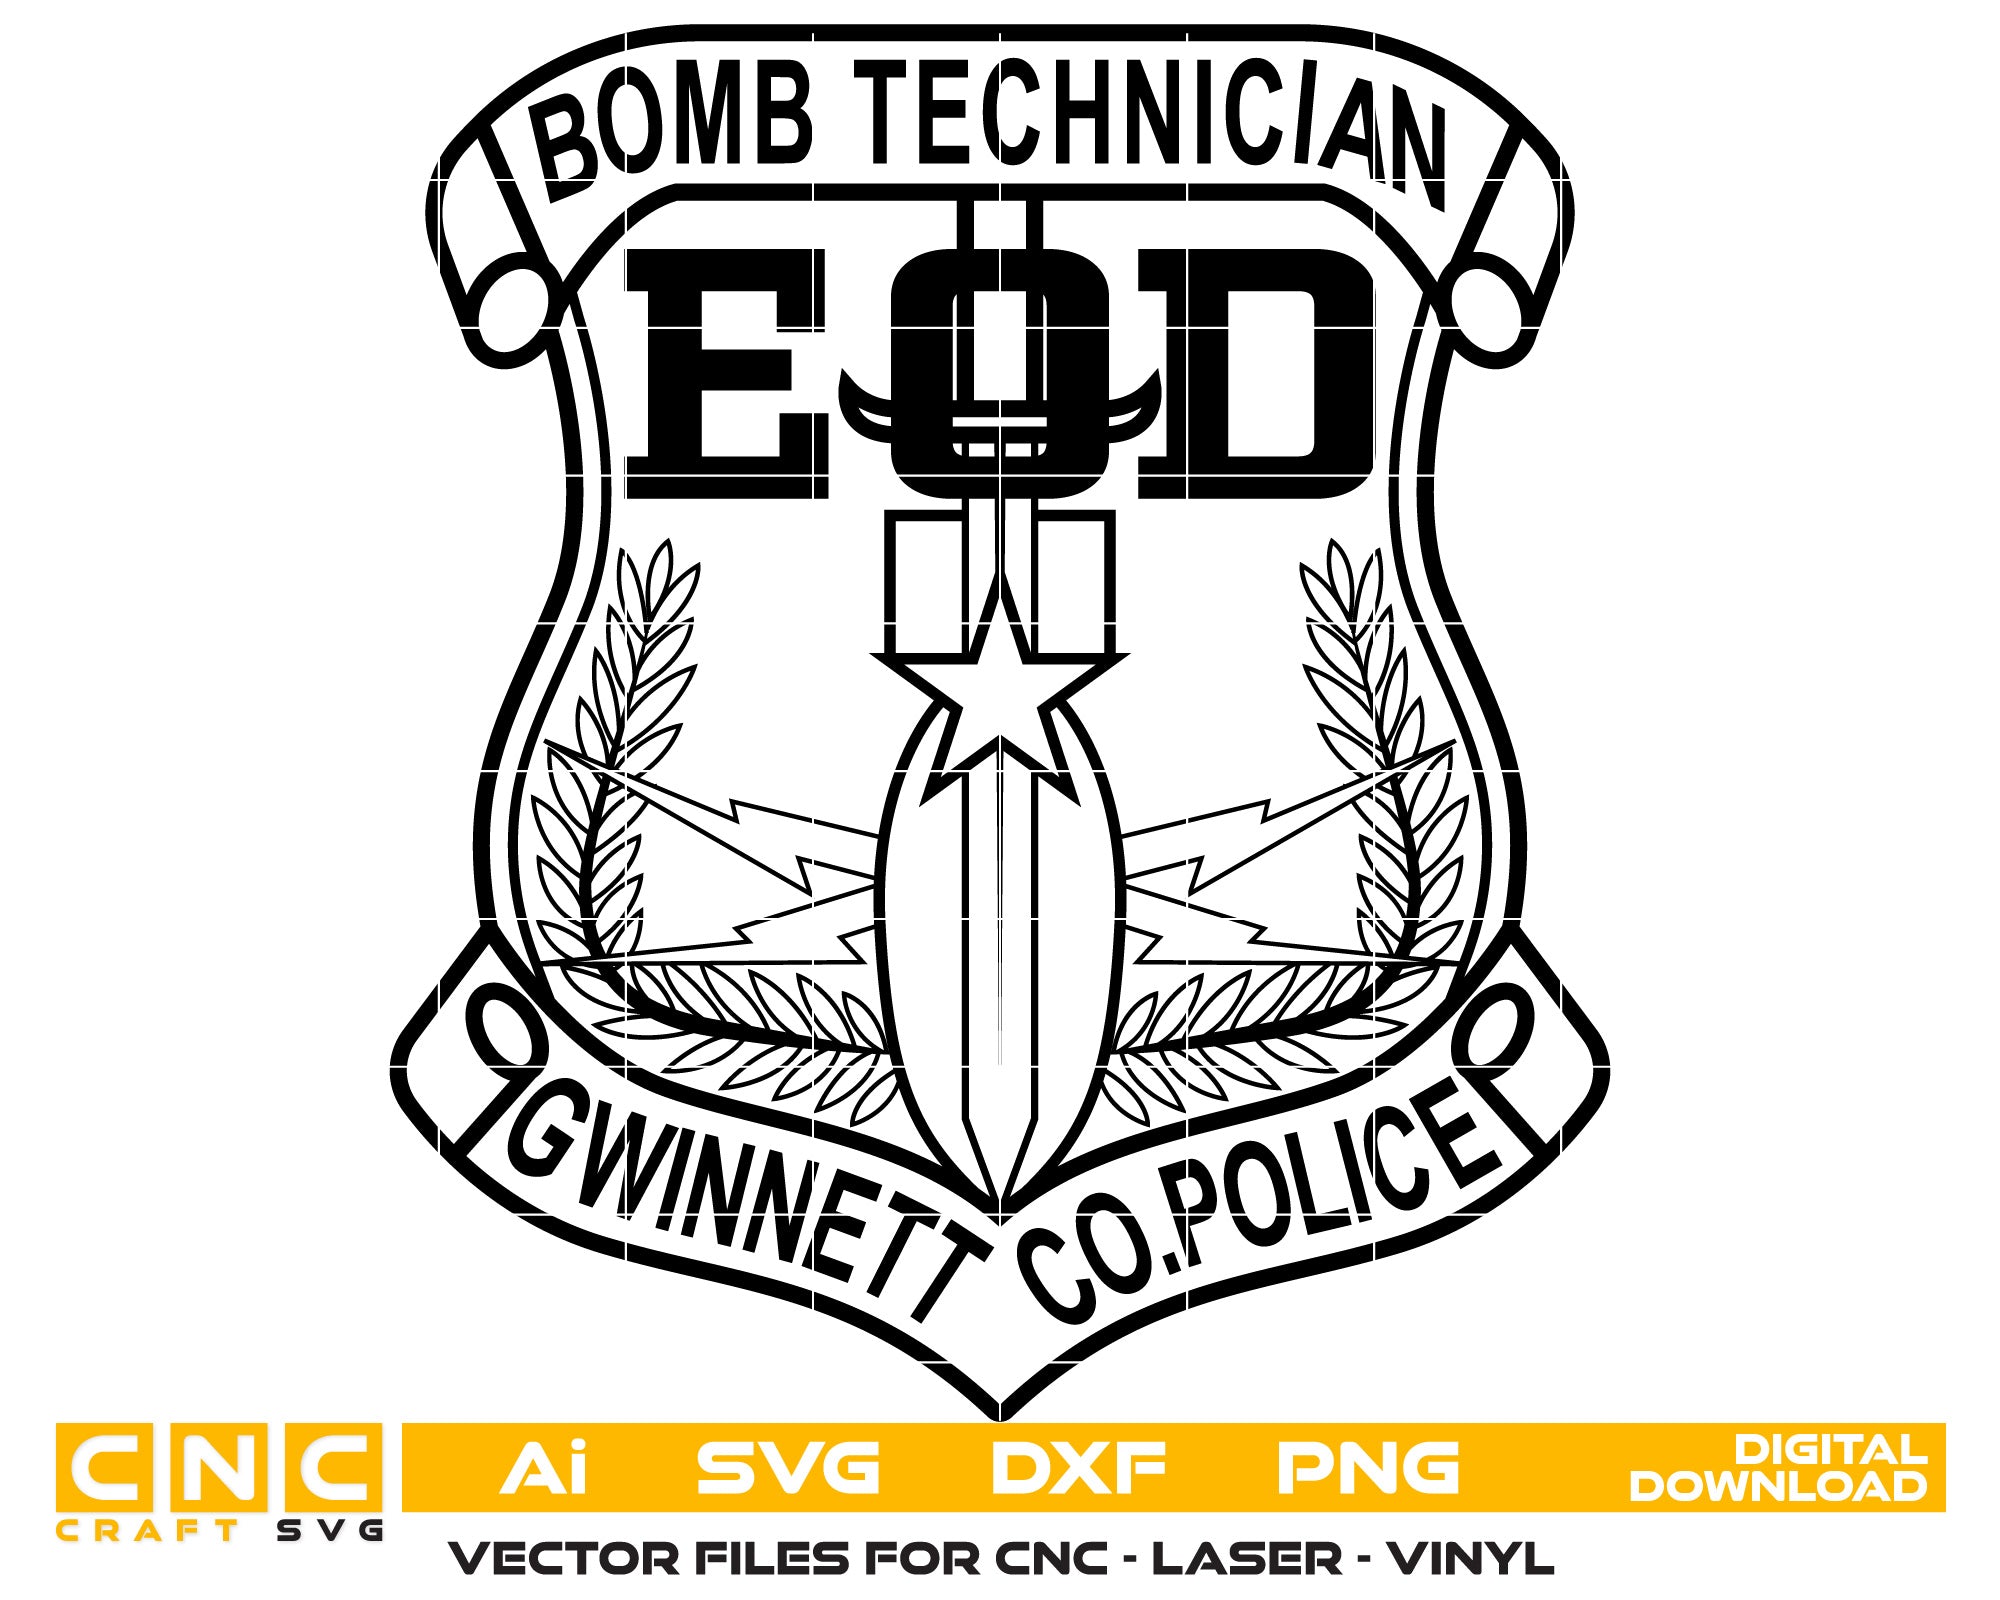 BOMB TECHNICIAN Vector Art, Ai,SVG, DXF, PNG, Digital Files